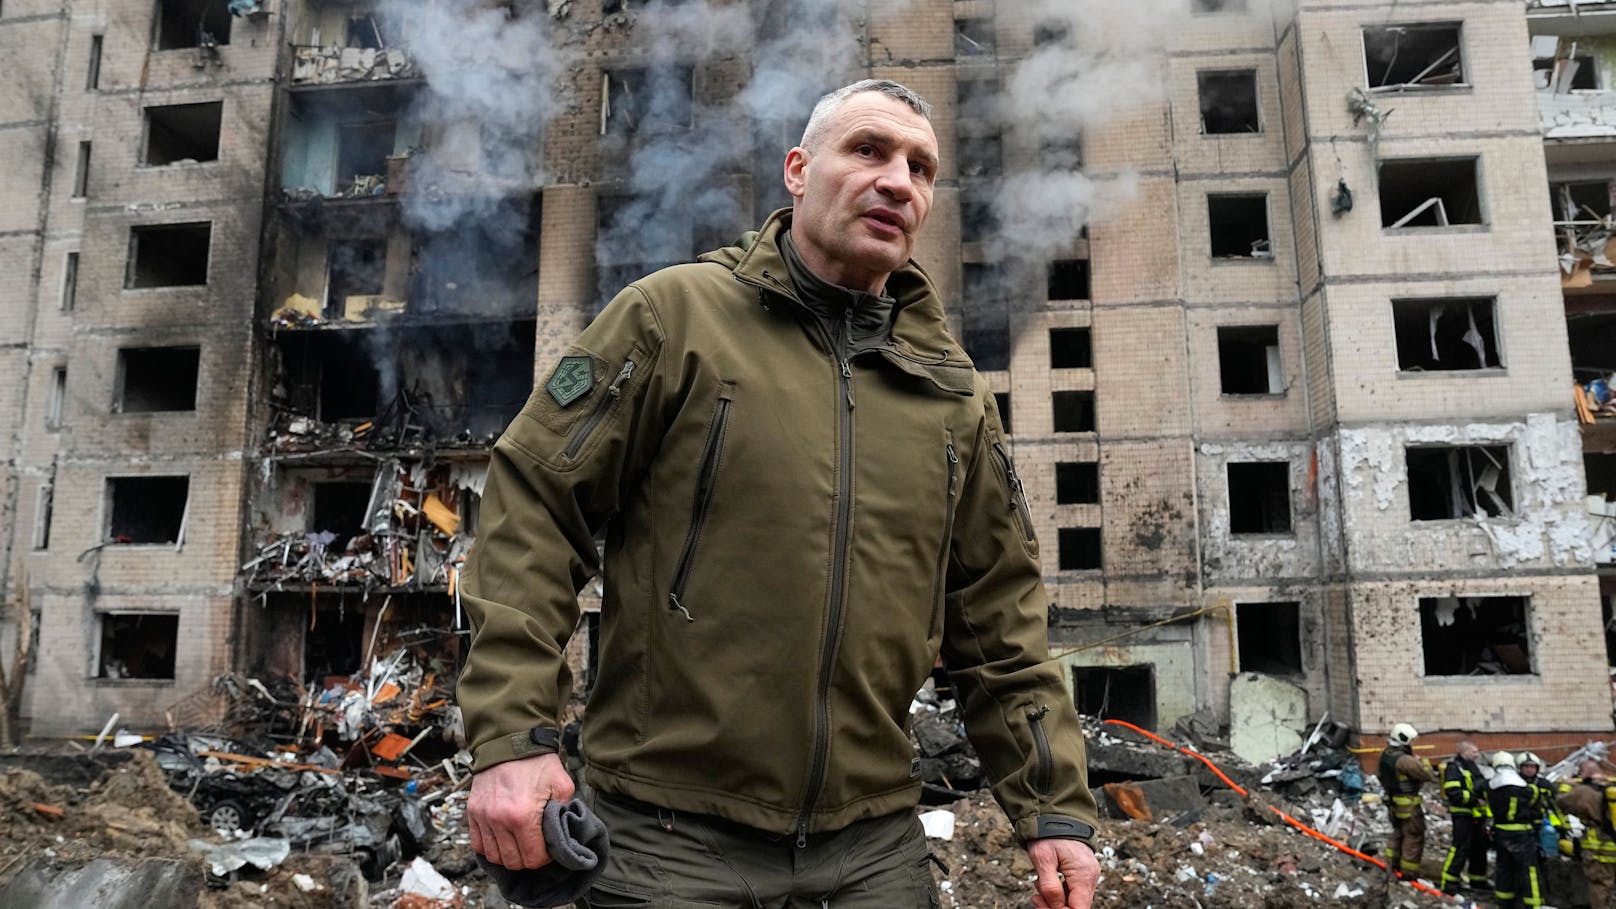 "Klitschko bereichert sich, während Soldaten sterben"